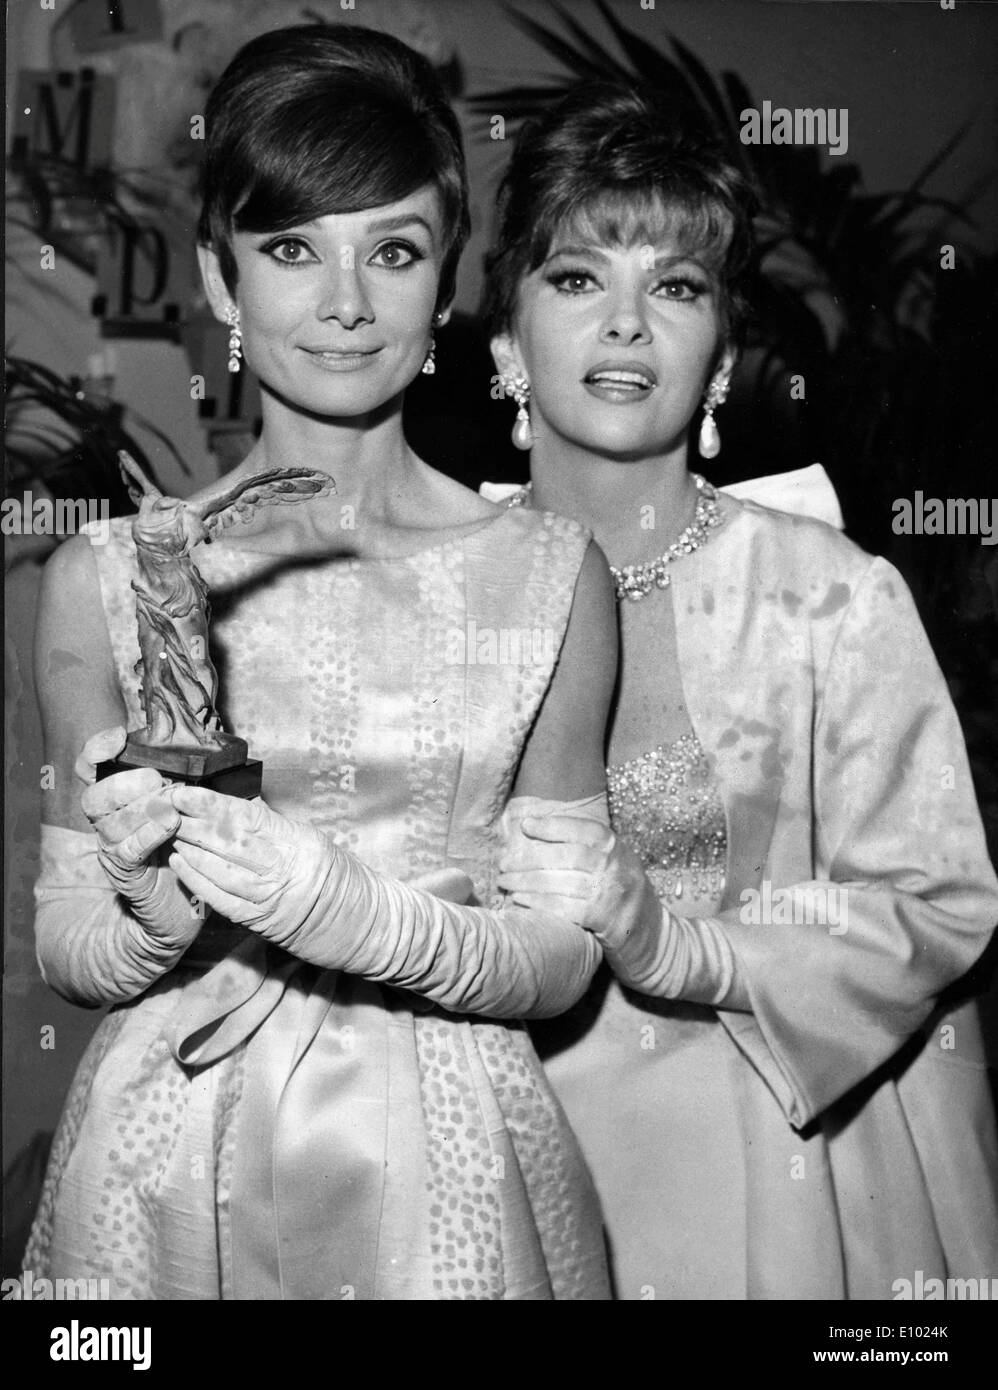 Actresses Audrey Hepburn and Gina Lollobrigida Stock Photo - Alamy